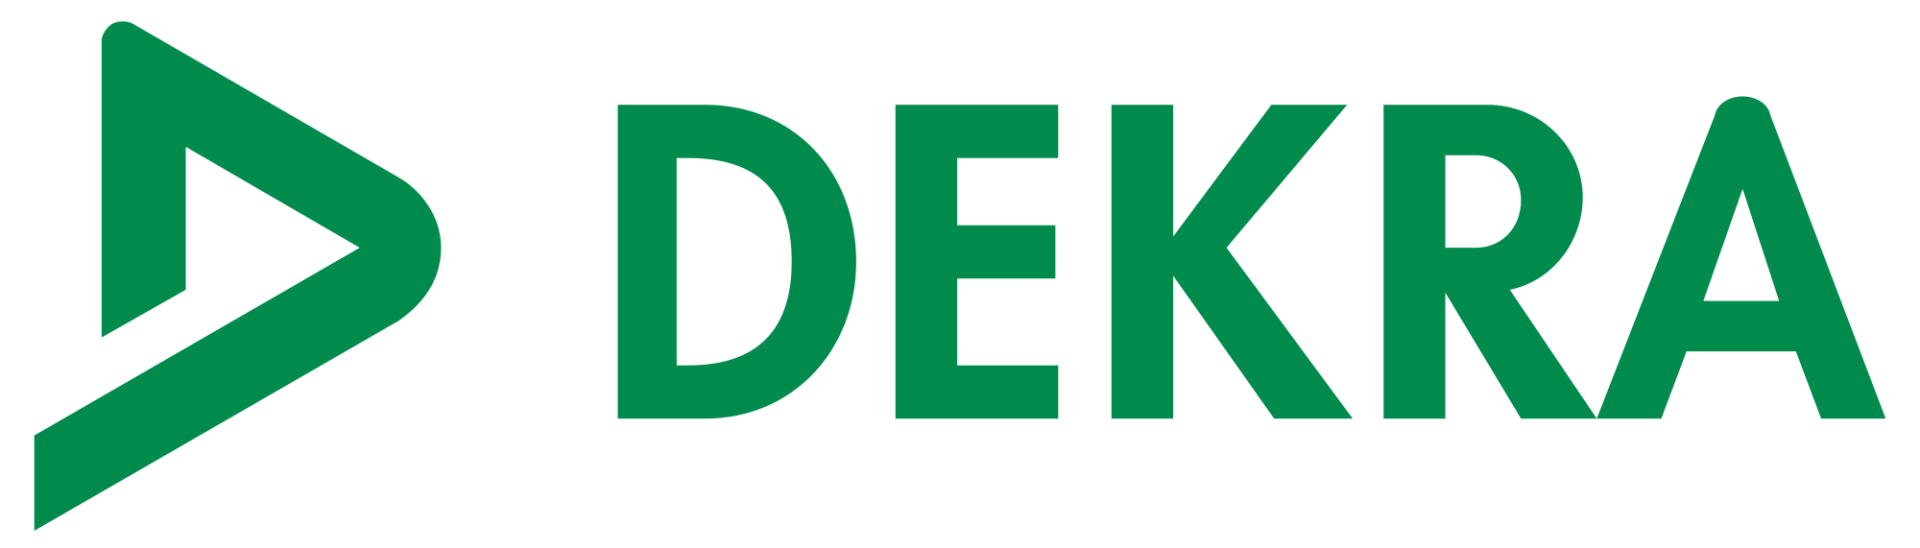 kabetec ist offizieller Lieferant udn Partner von DEKRA zum thema Virtual Reality